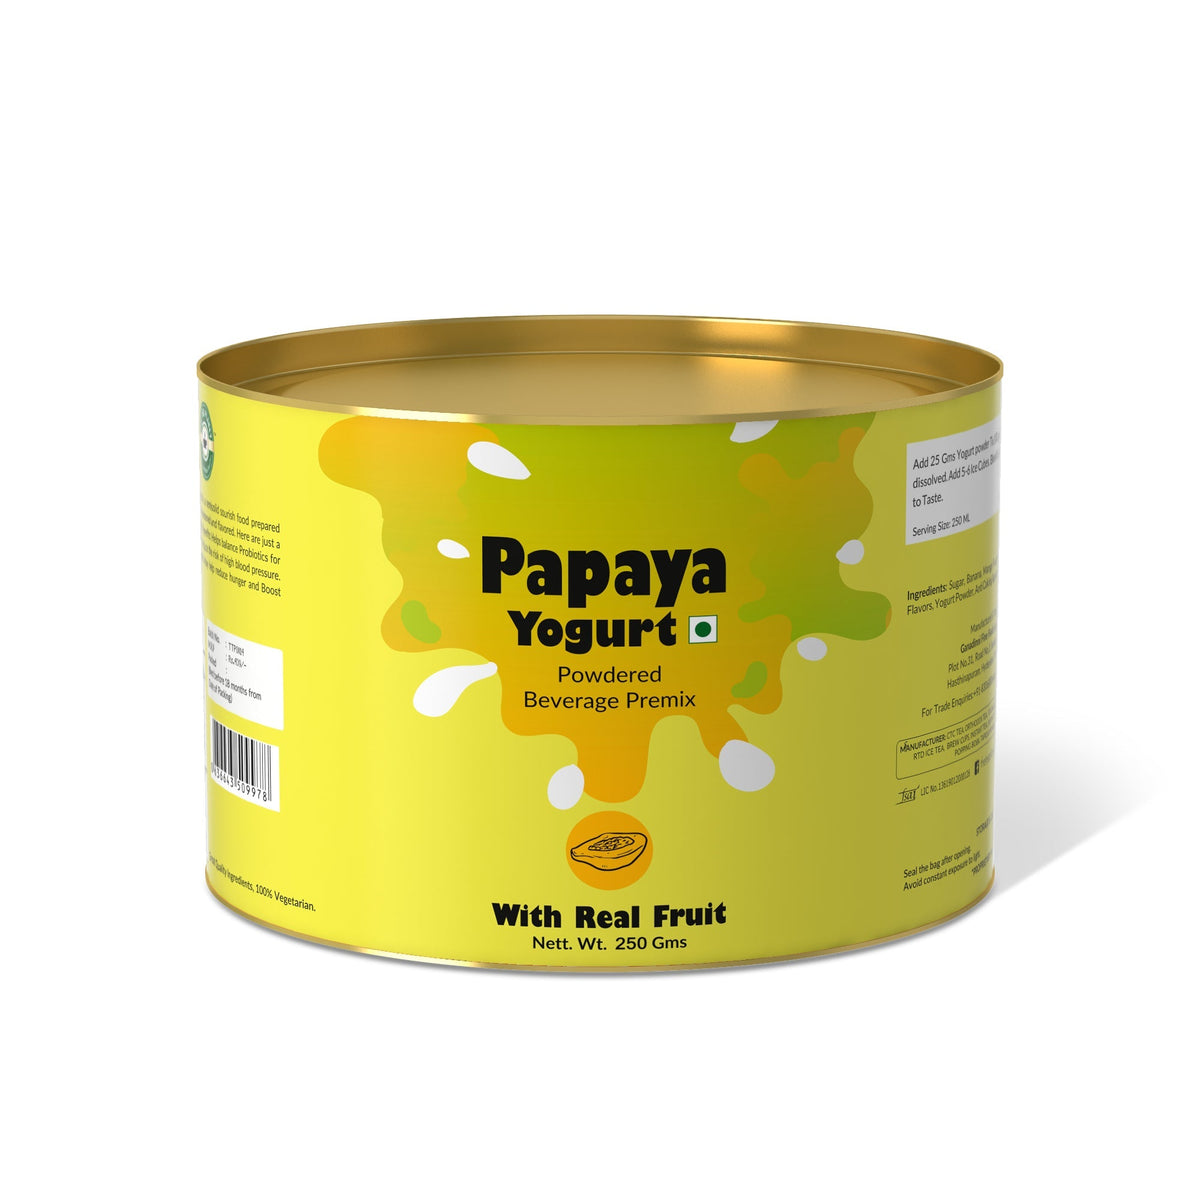 Papaya Yogurt Mix - 800 gms